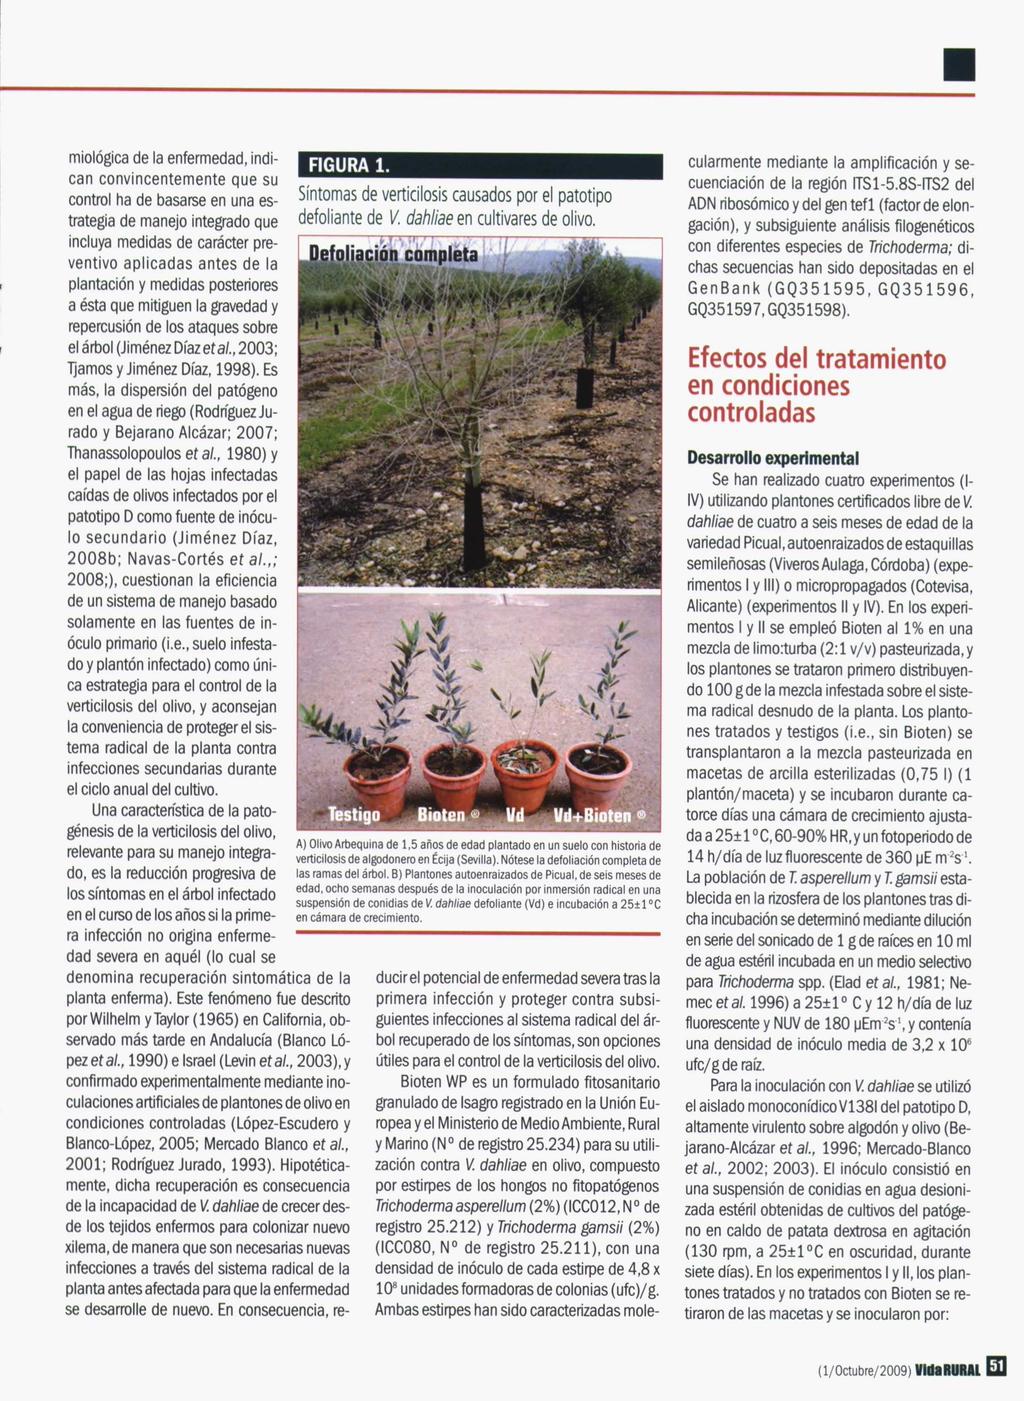 FIGURA 1. Síntomas de verticilosis causados por el patotipo defoliante de V. dahliae en cultivares de olivo.